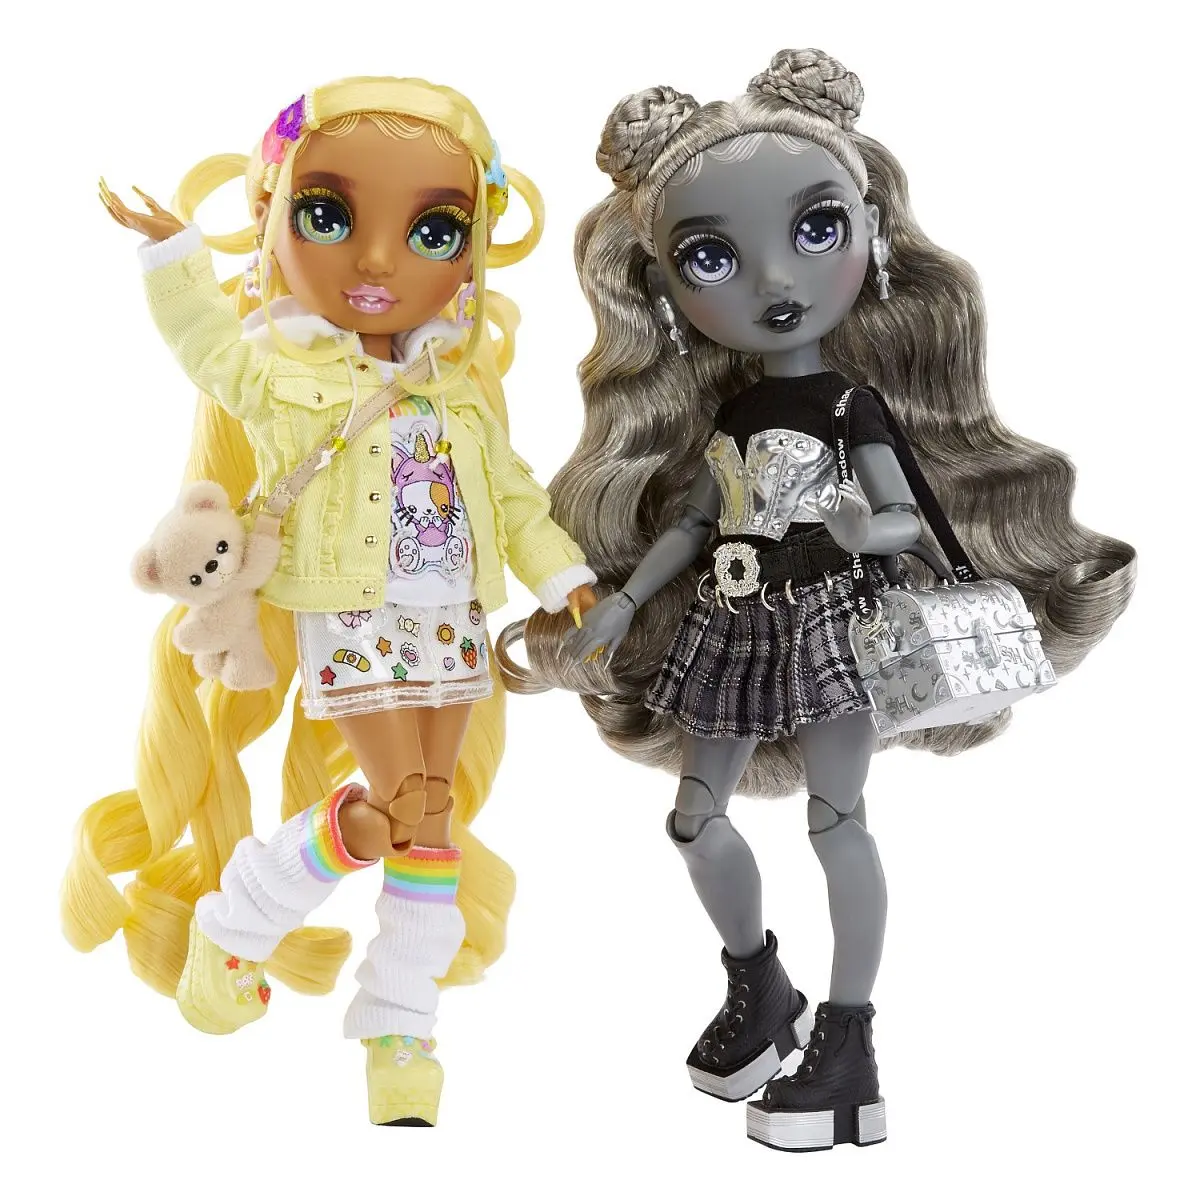 Куклы Sunny и Luna Madison - фото